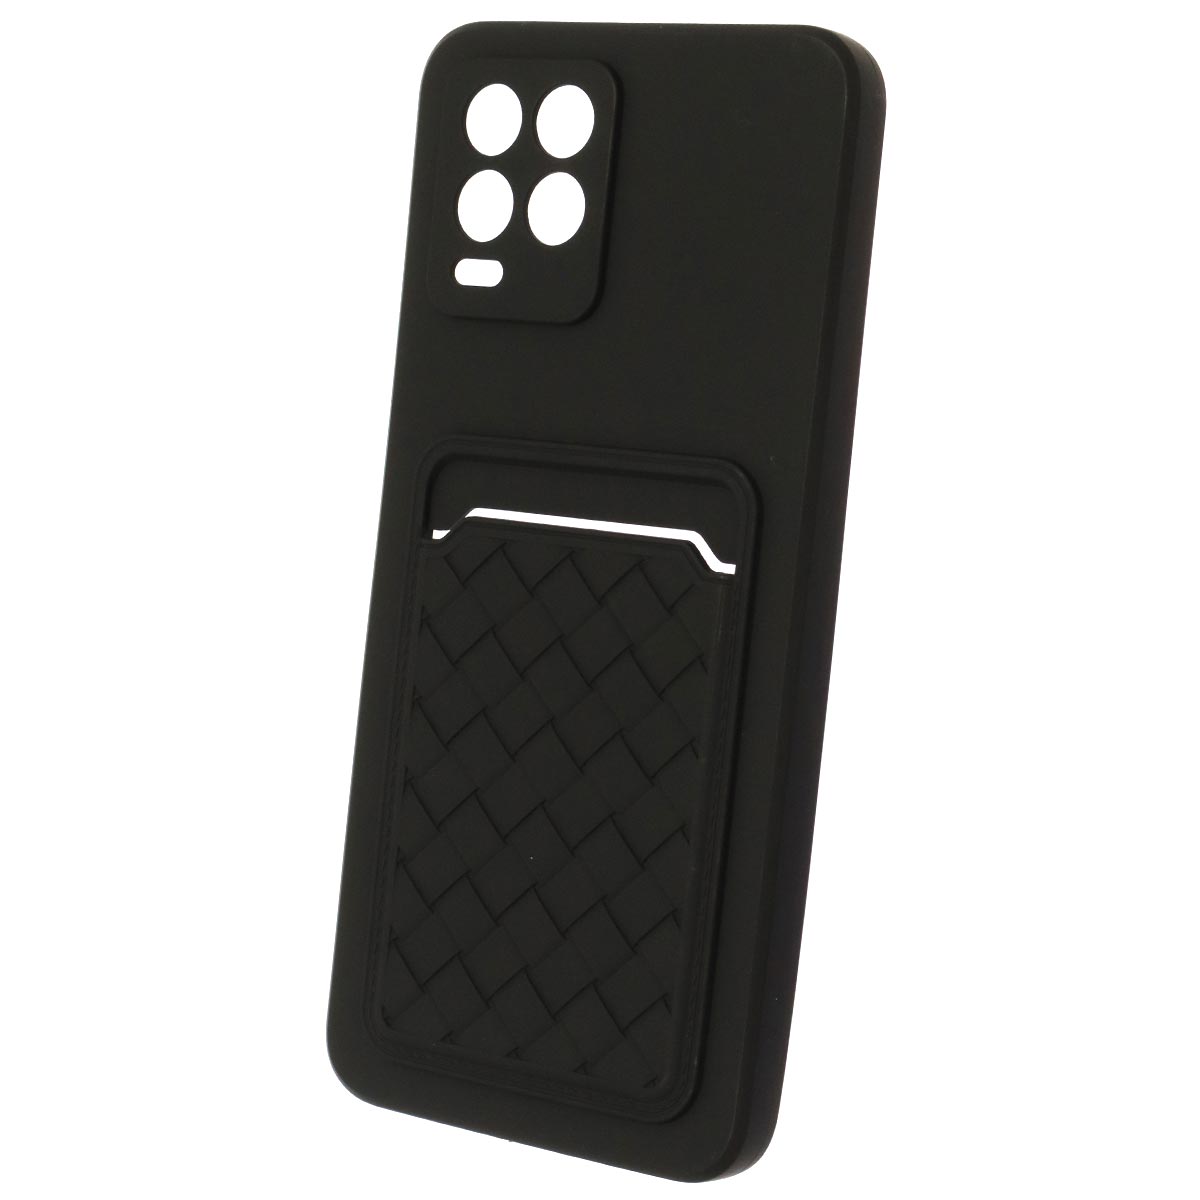 Чехол накладка CARD CASE для Realme 8, Realme 8 Pro, силикон, отдел для карт, цвет черный